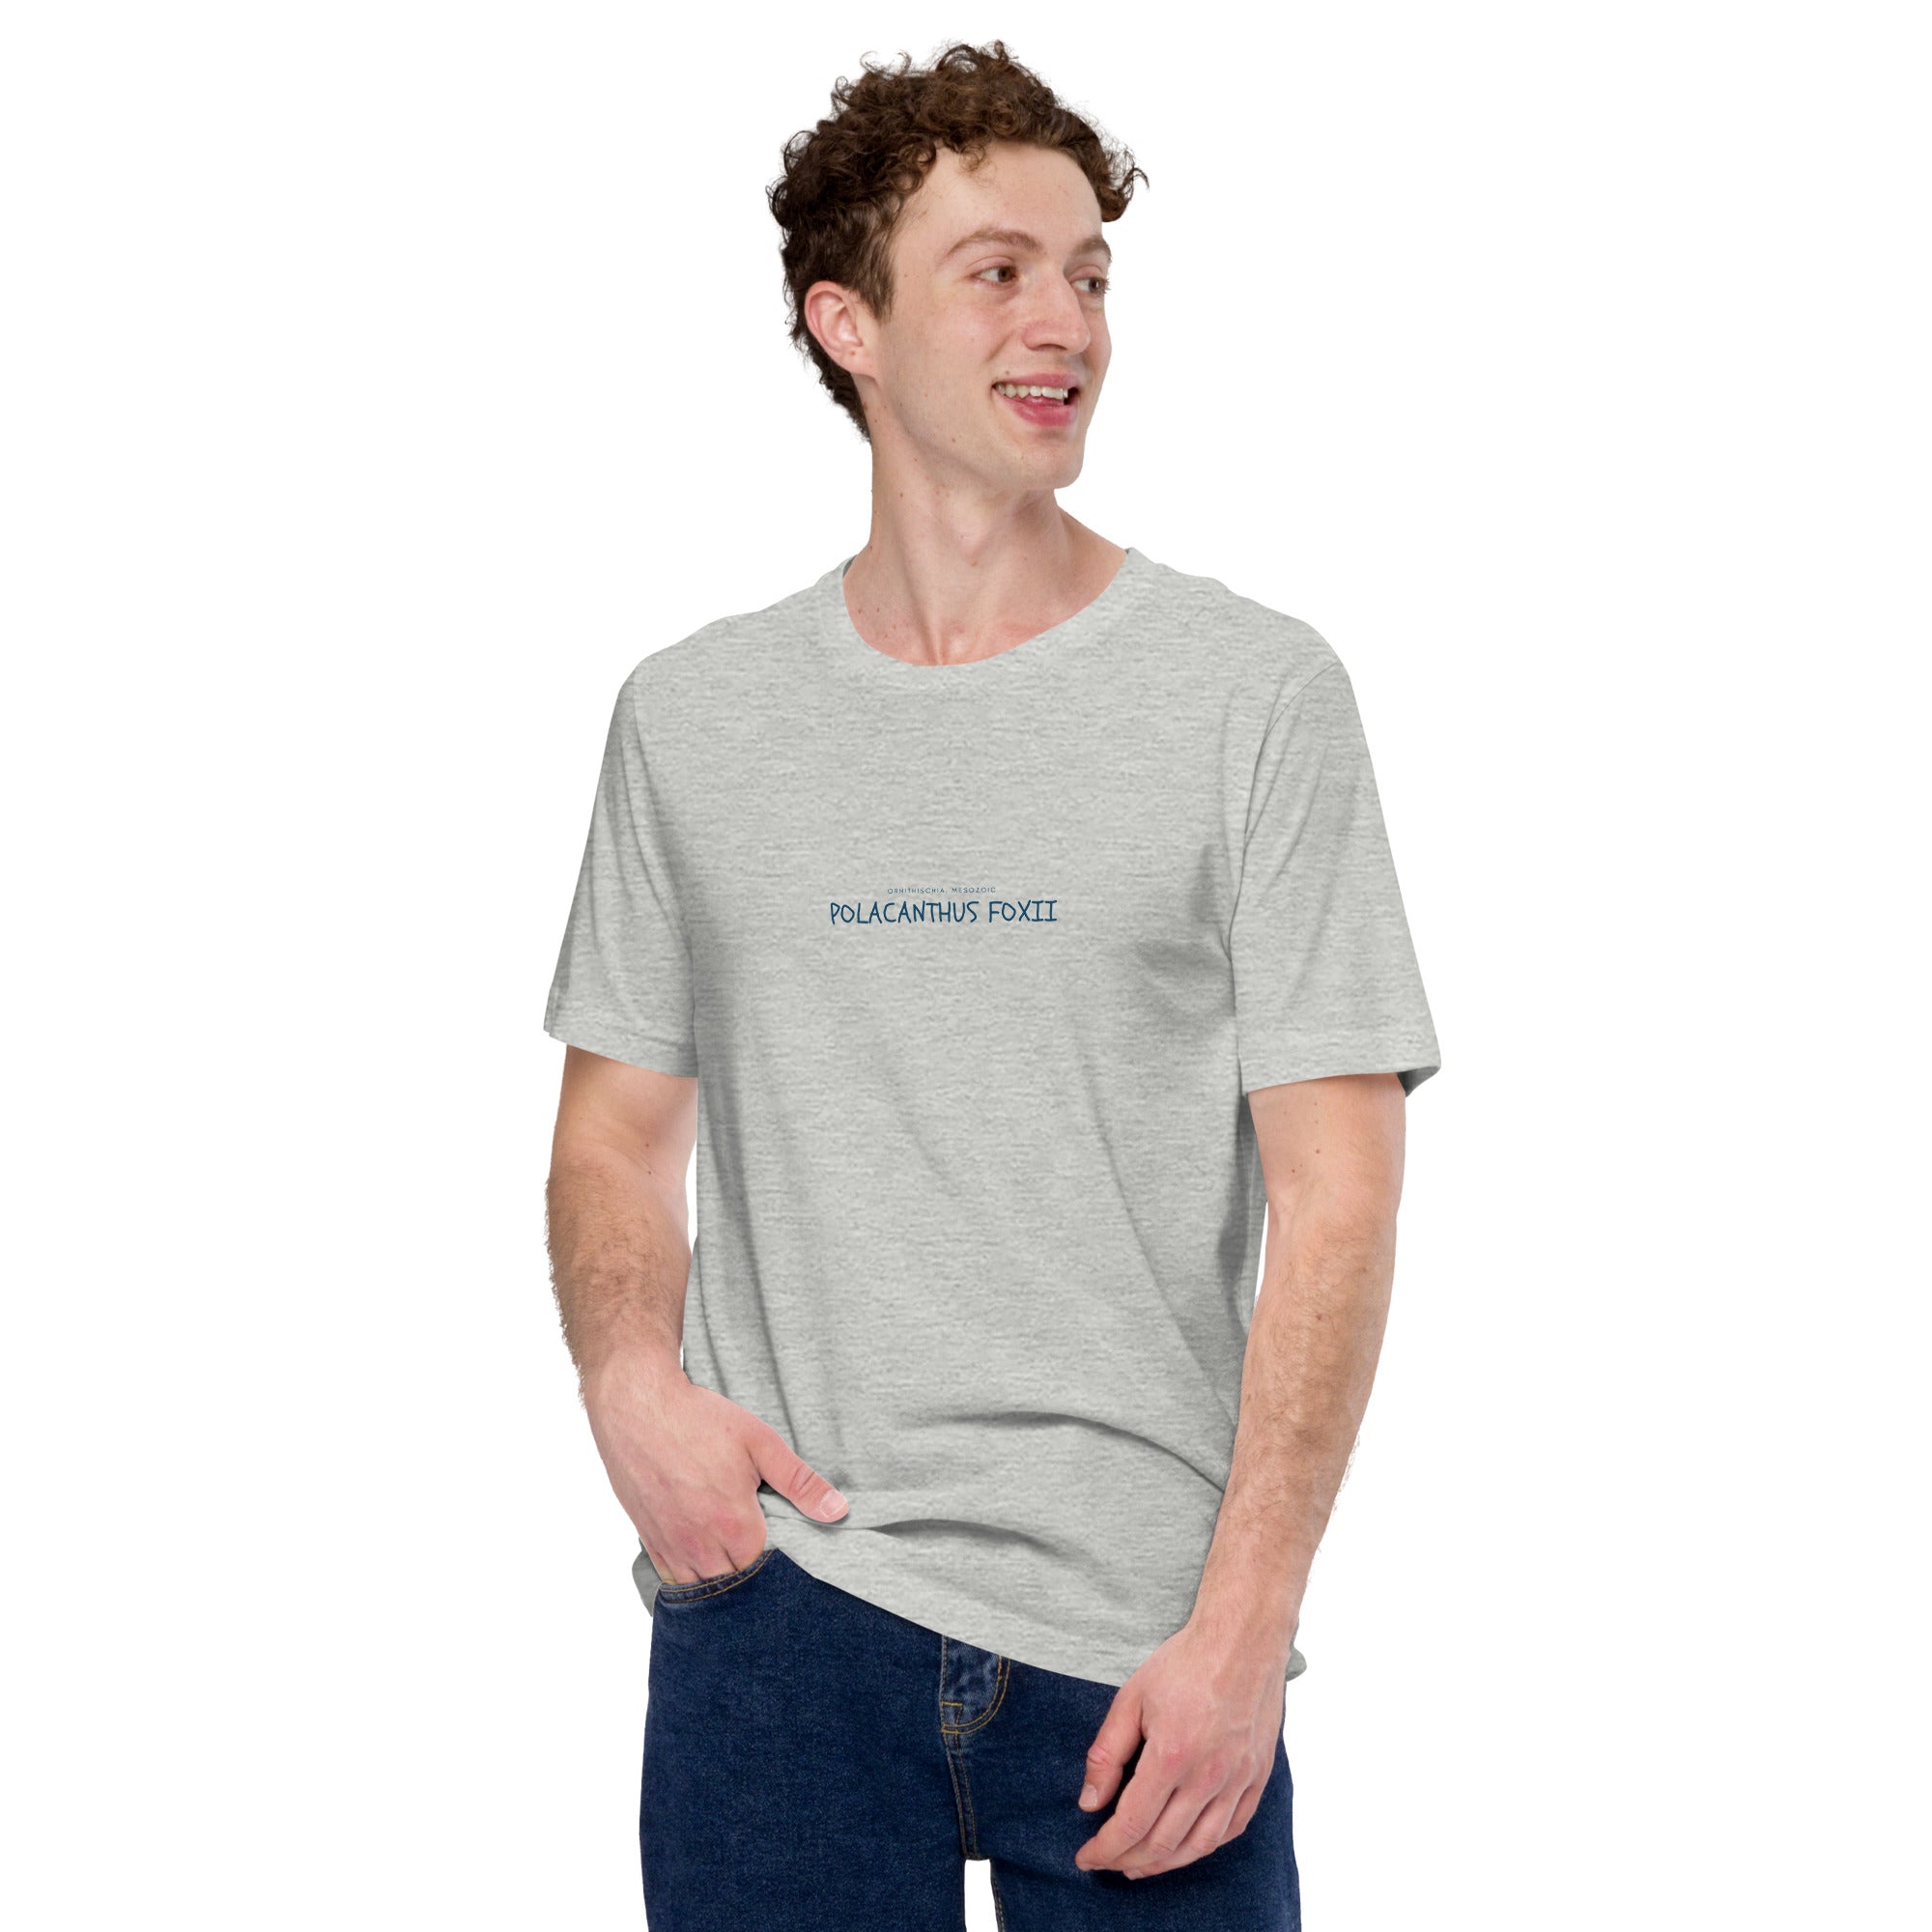 Camiseta unisex con texto "Polacanthus foxii"